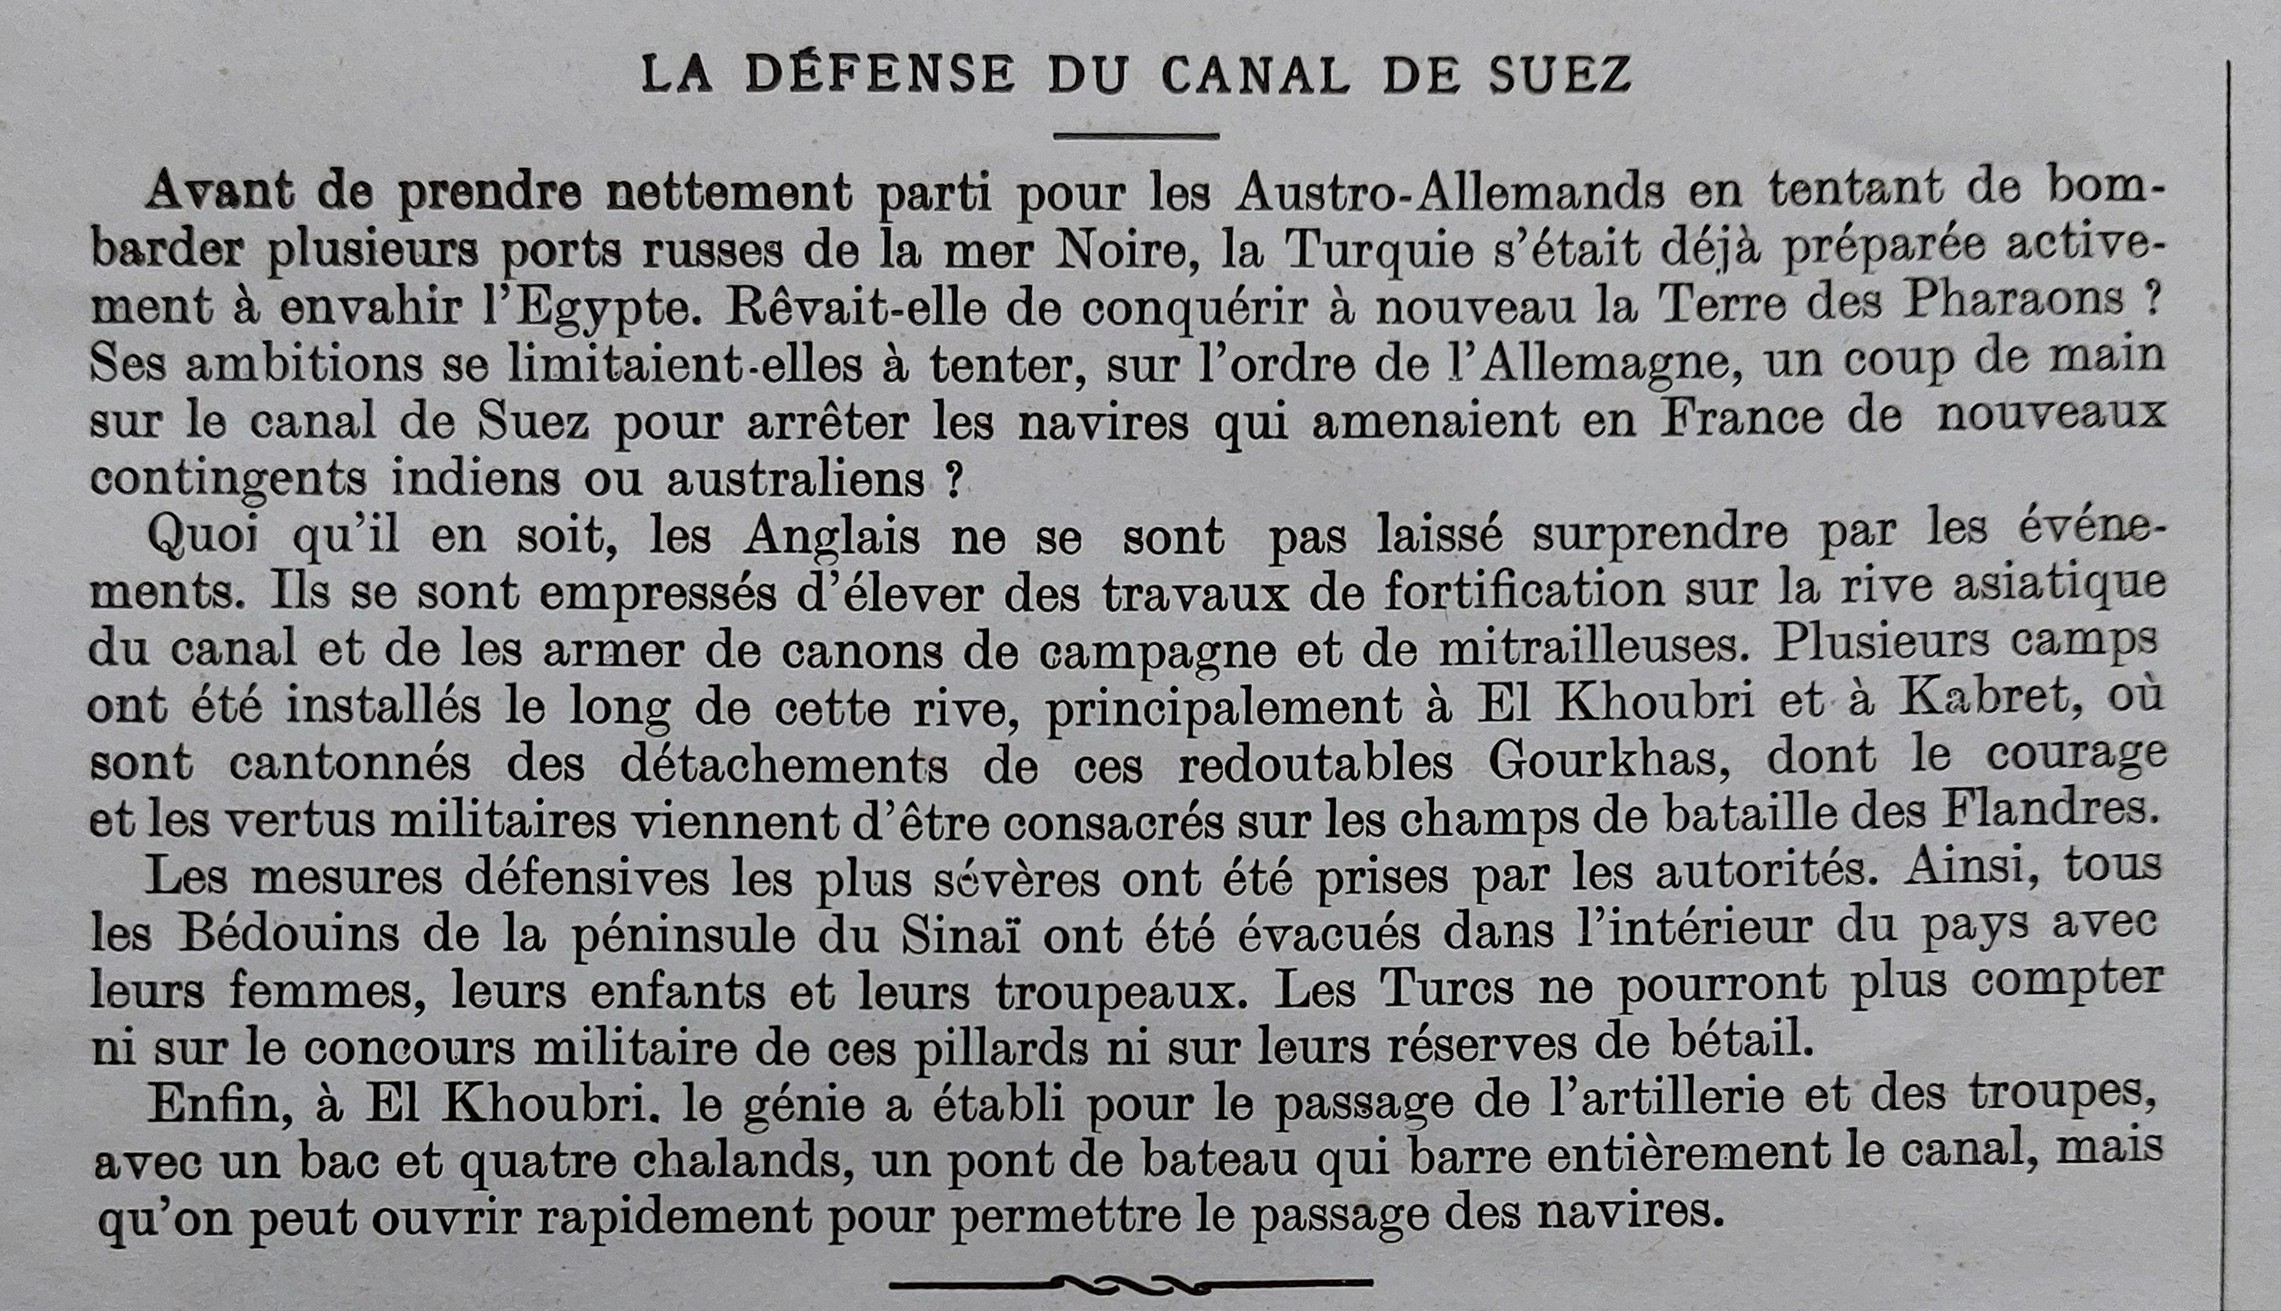 Canal de Suez LI 1914-12-05 B -.jpg